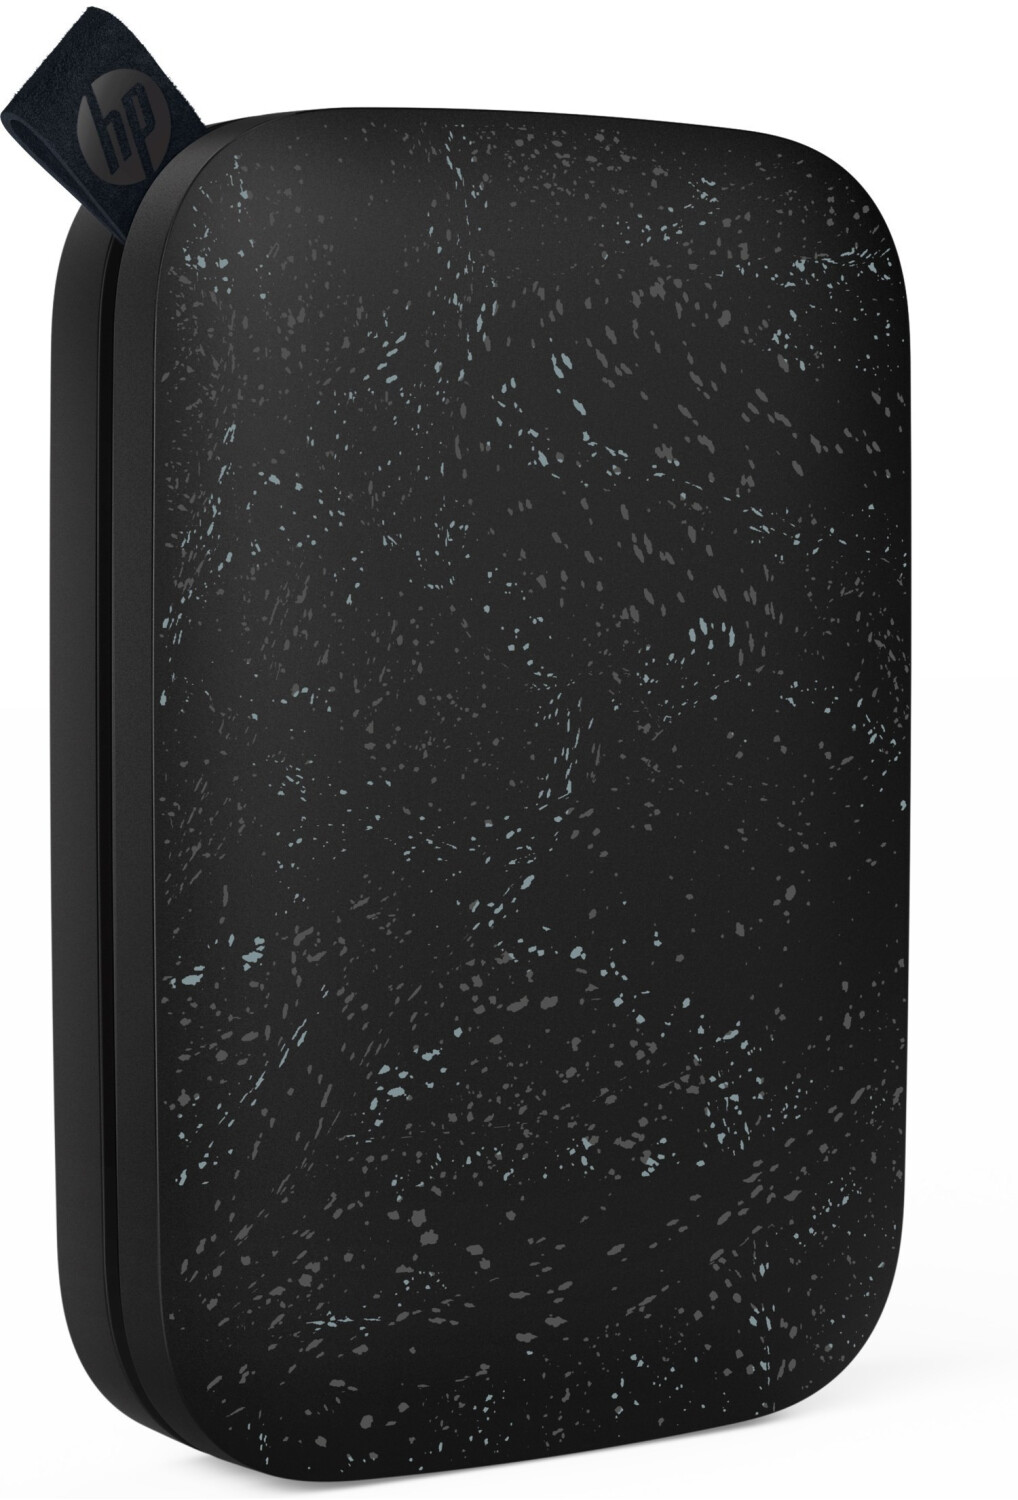 Imprimante photo mobile HP Sprocket 200 noir compacte couleur